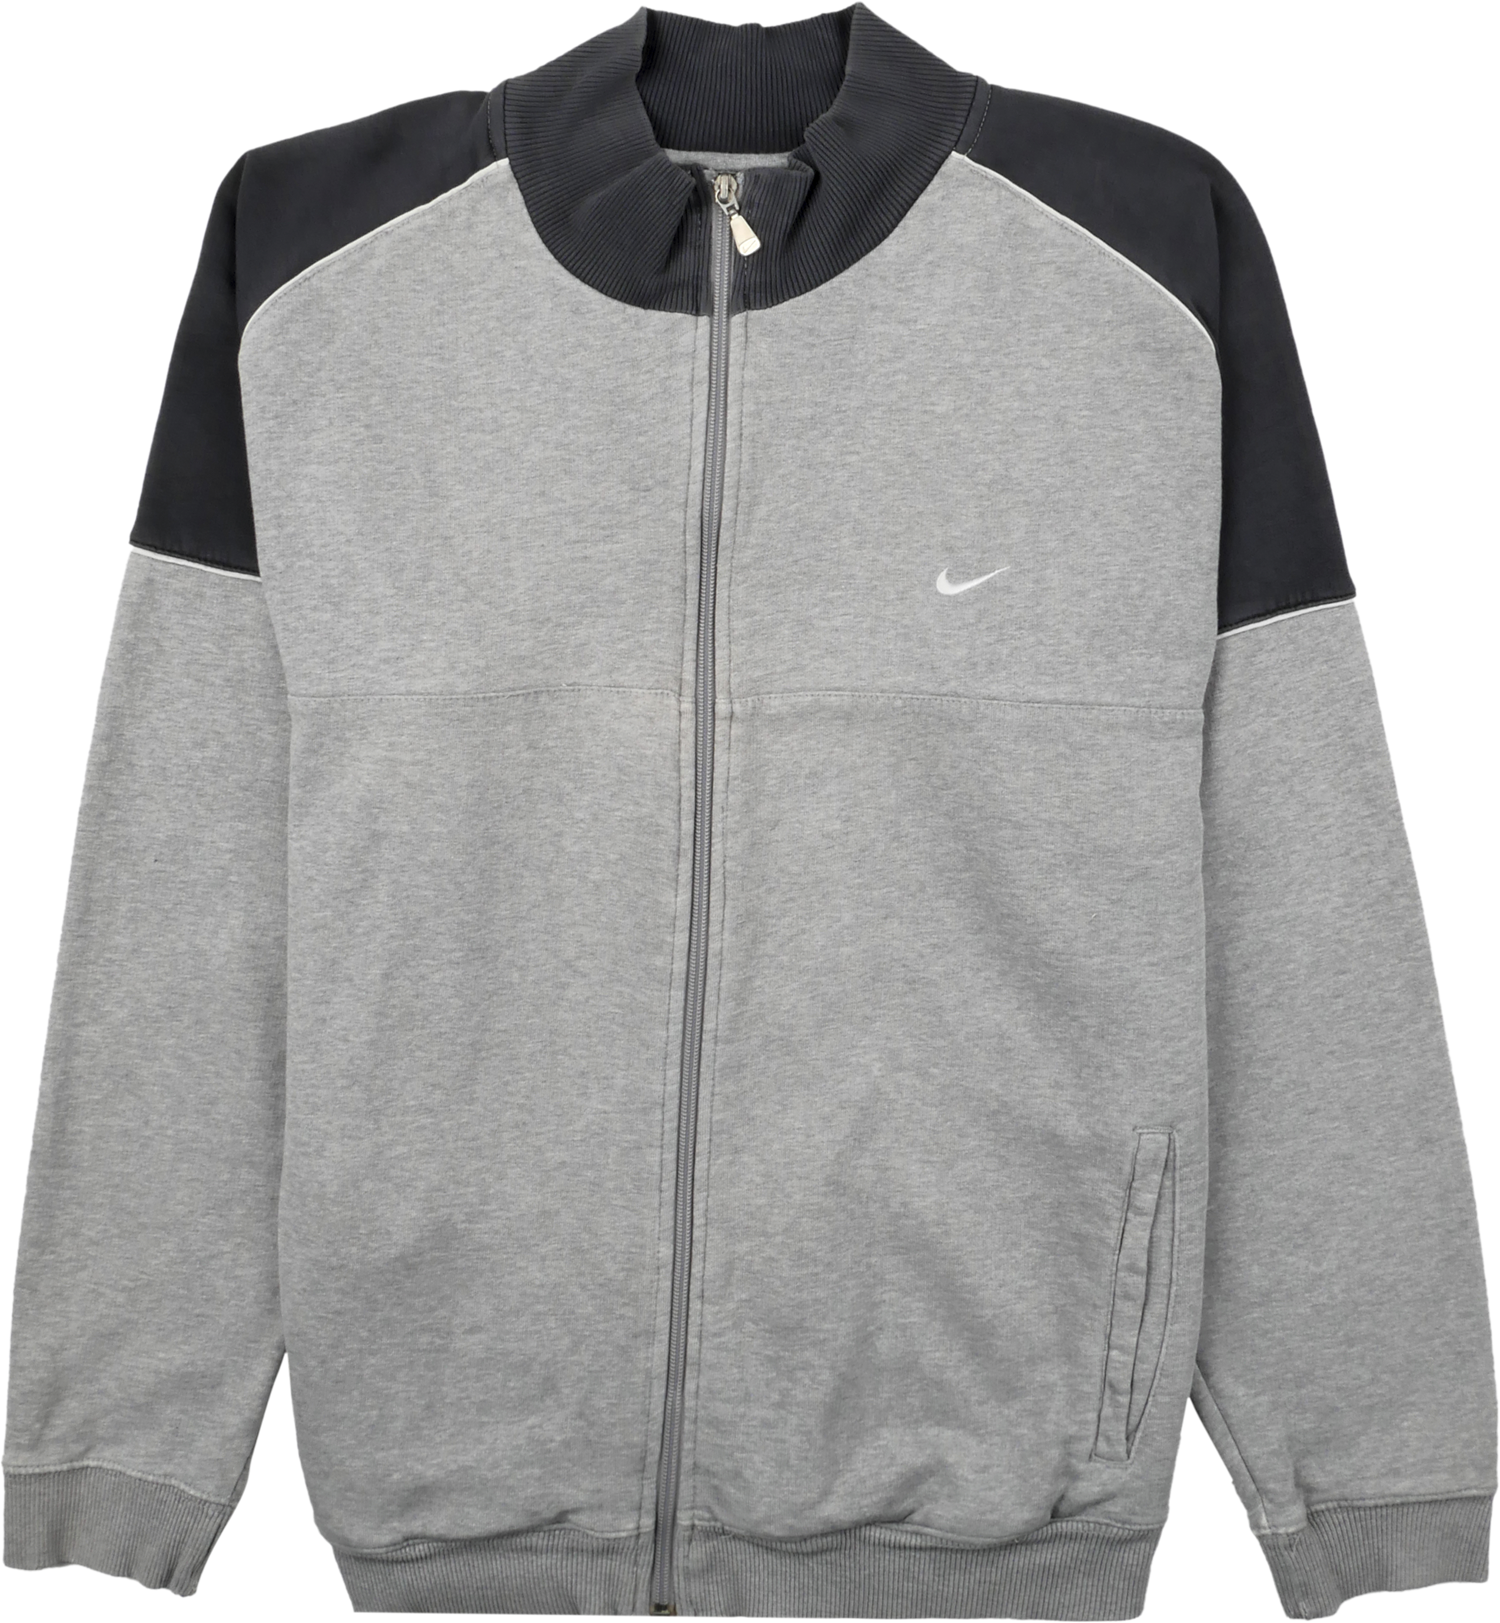 Nike Zip Pullover bunt